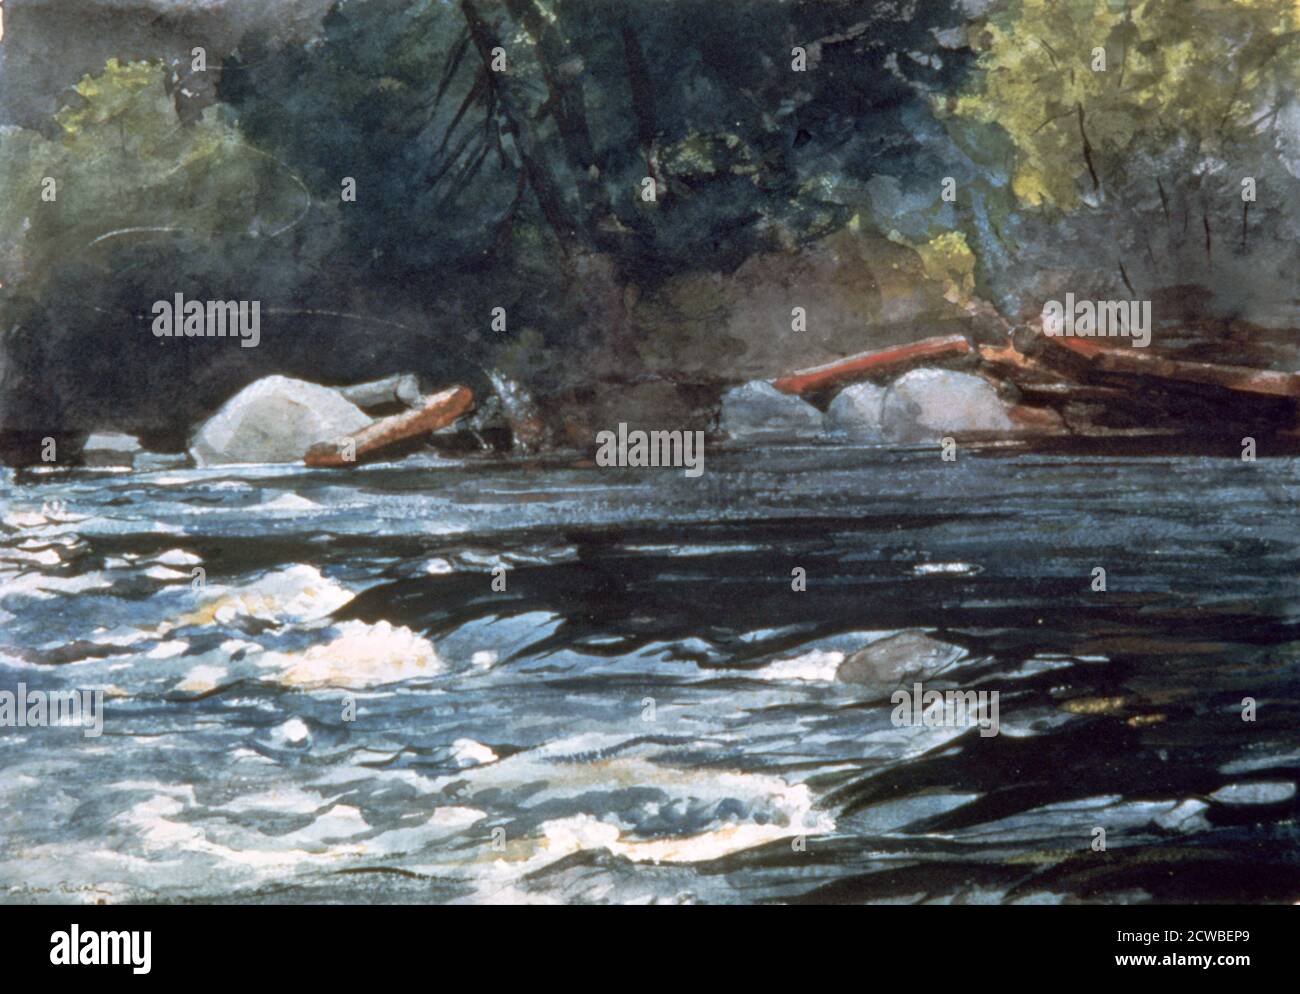 Rapids, Hudson River, 1894. Artiste: Winslow Homer. Winslow Homer était un peintre et graveur de paysage américain. Il est considéré comme l'un des plus grands peintres de l'Amérique du XIXe siècle et figure prééminente dans l'art américain Banque D'Images